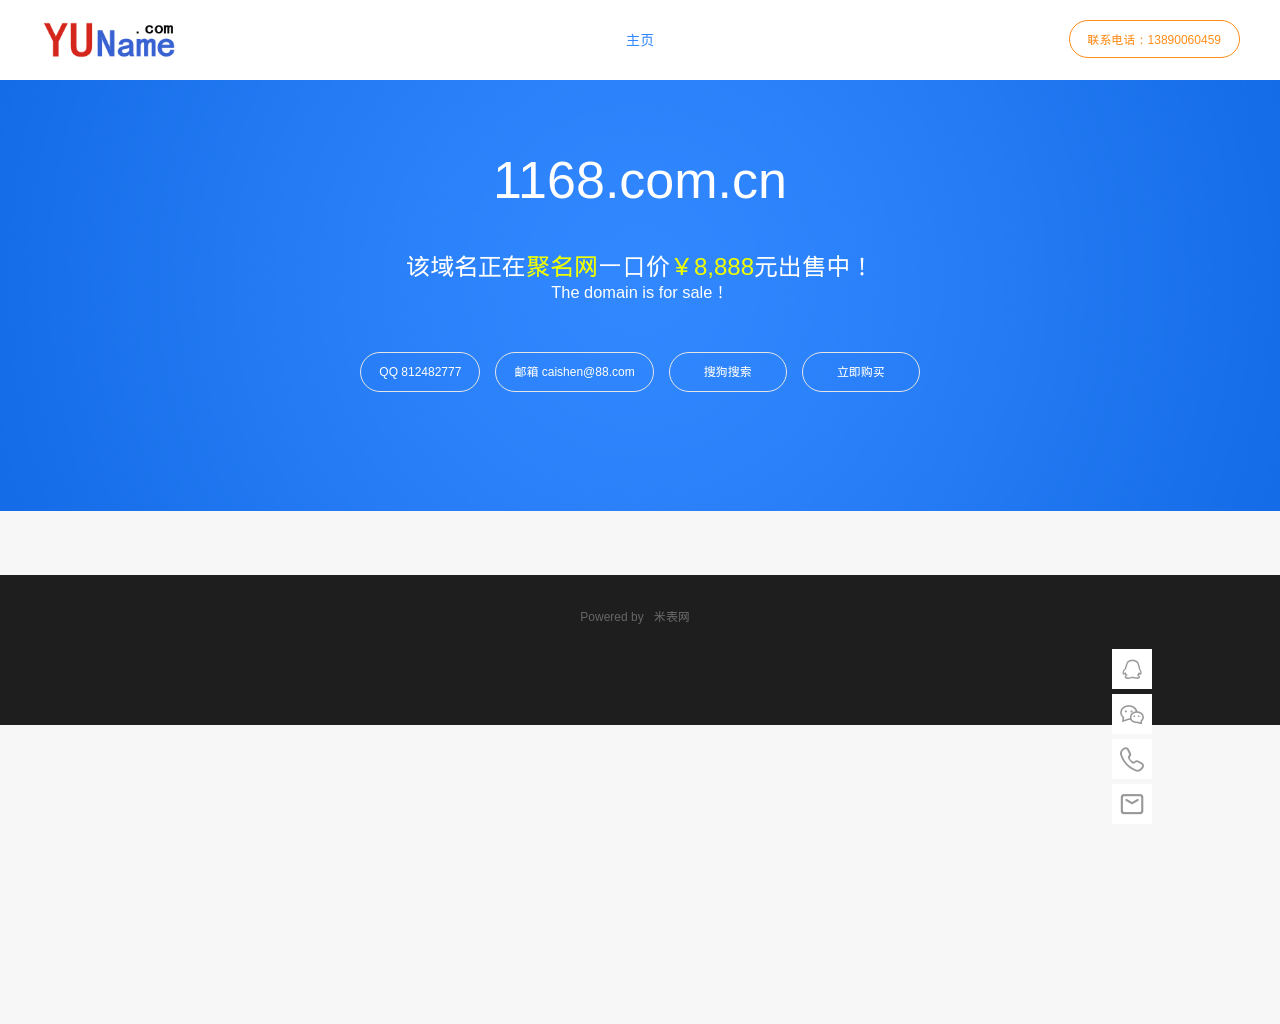 1168.com.cn